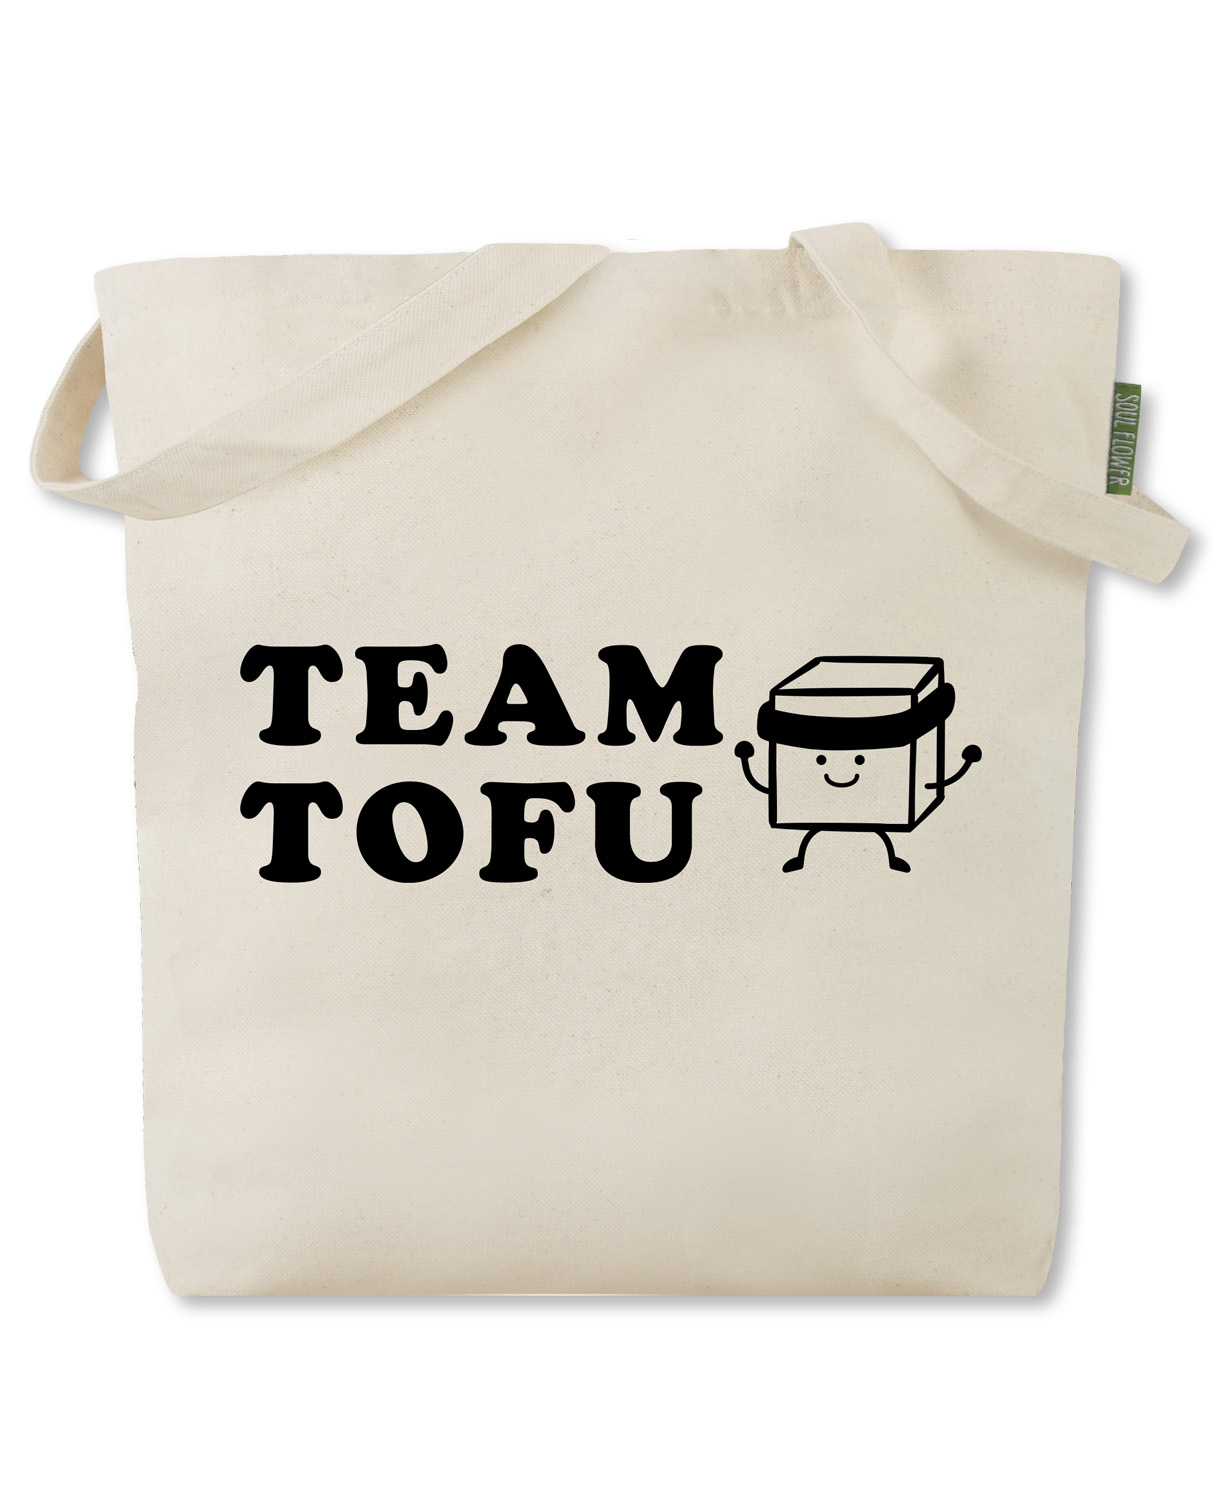 NEW! Team Tofu Tote Bag